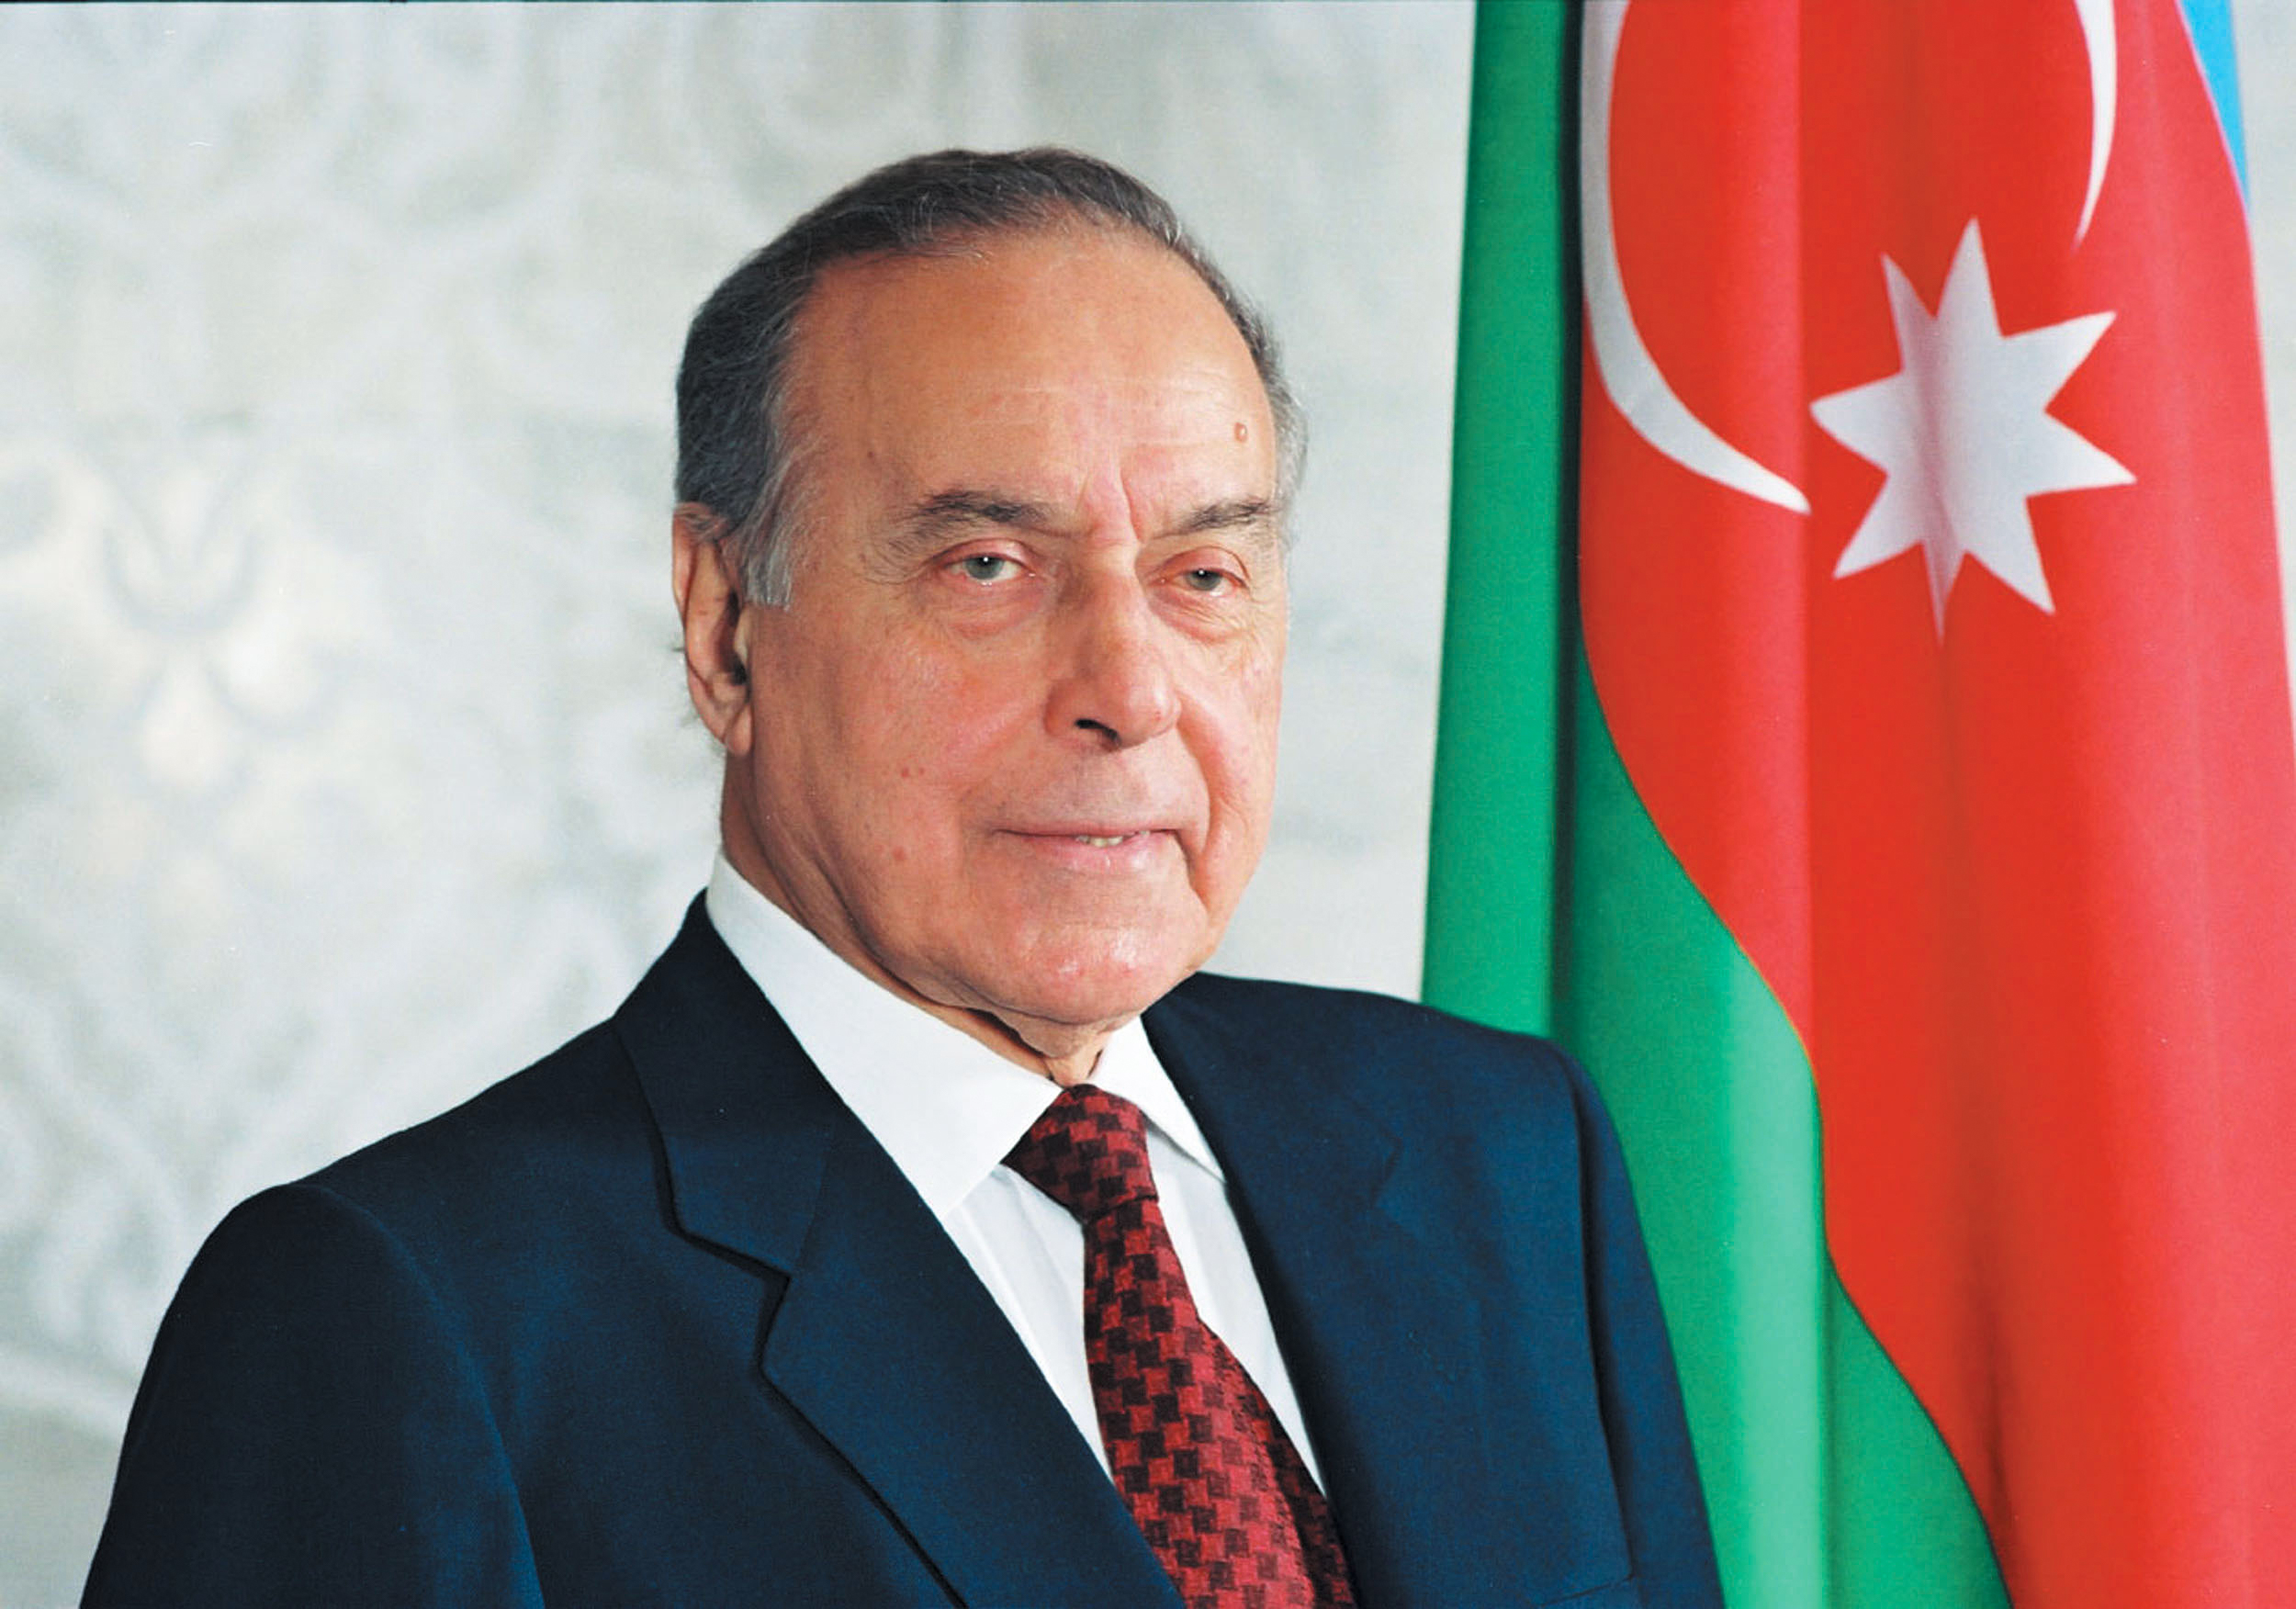 Azerbaycan'ın mimarı Haydar Aliyev doğumunun 99. yılında anılıyor